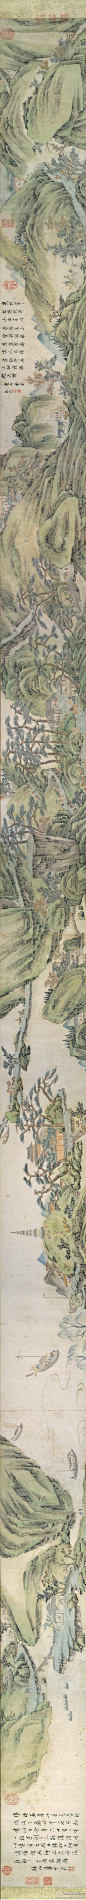 【國畫947】明 蕭雲從 《秋山行旅圖巻》—— 紙本設色，明代畫家蕭雲從國畫作品，現藏東京國立博物館。